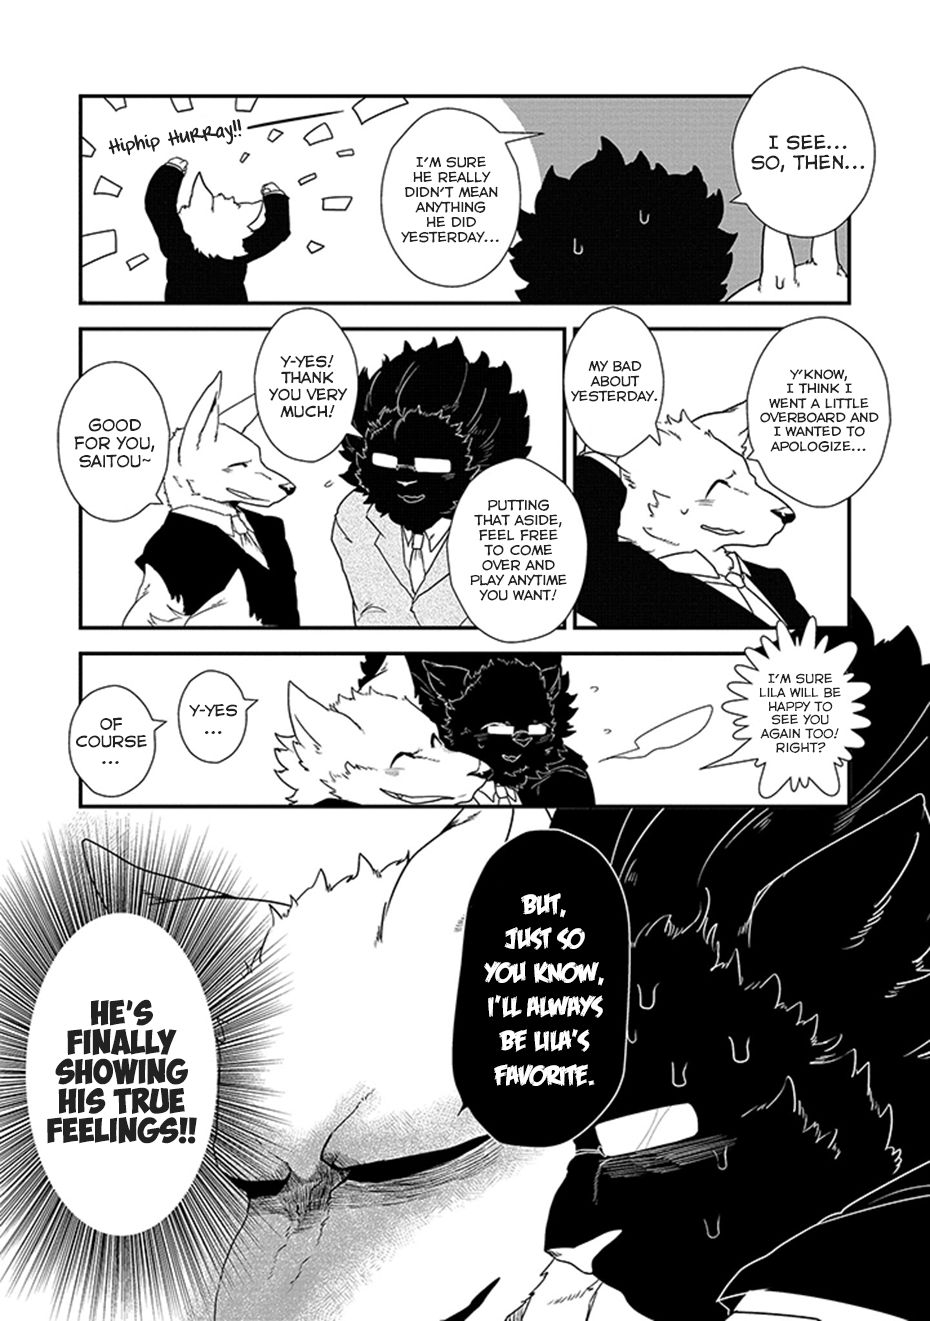 [Yakantuzura] The Beast and His Pet High School Girl Redux [English] (Updated: 7/13/15) 68